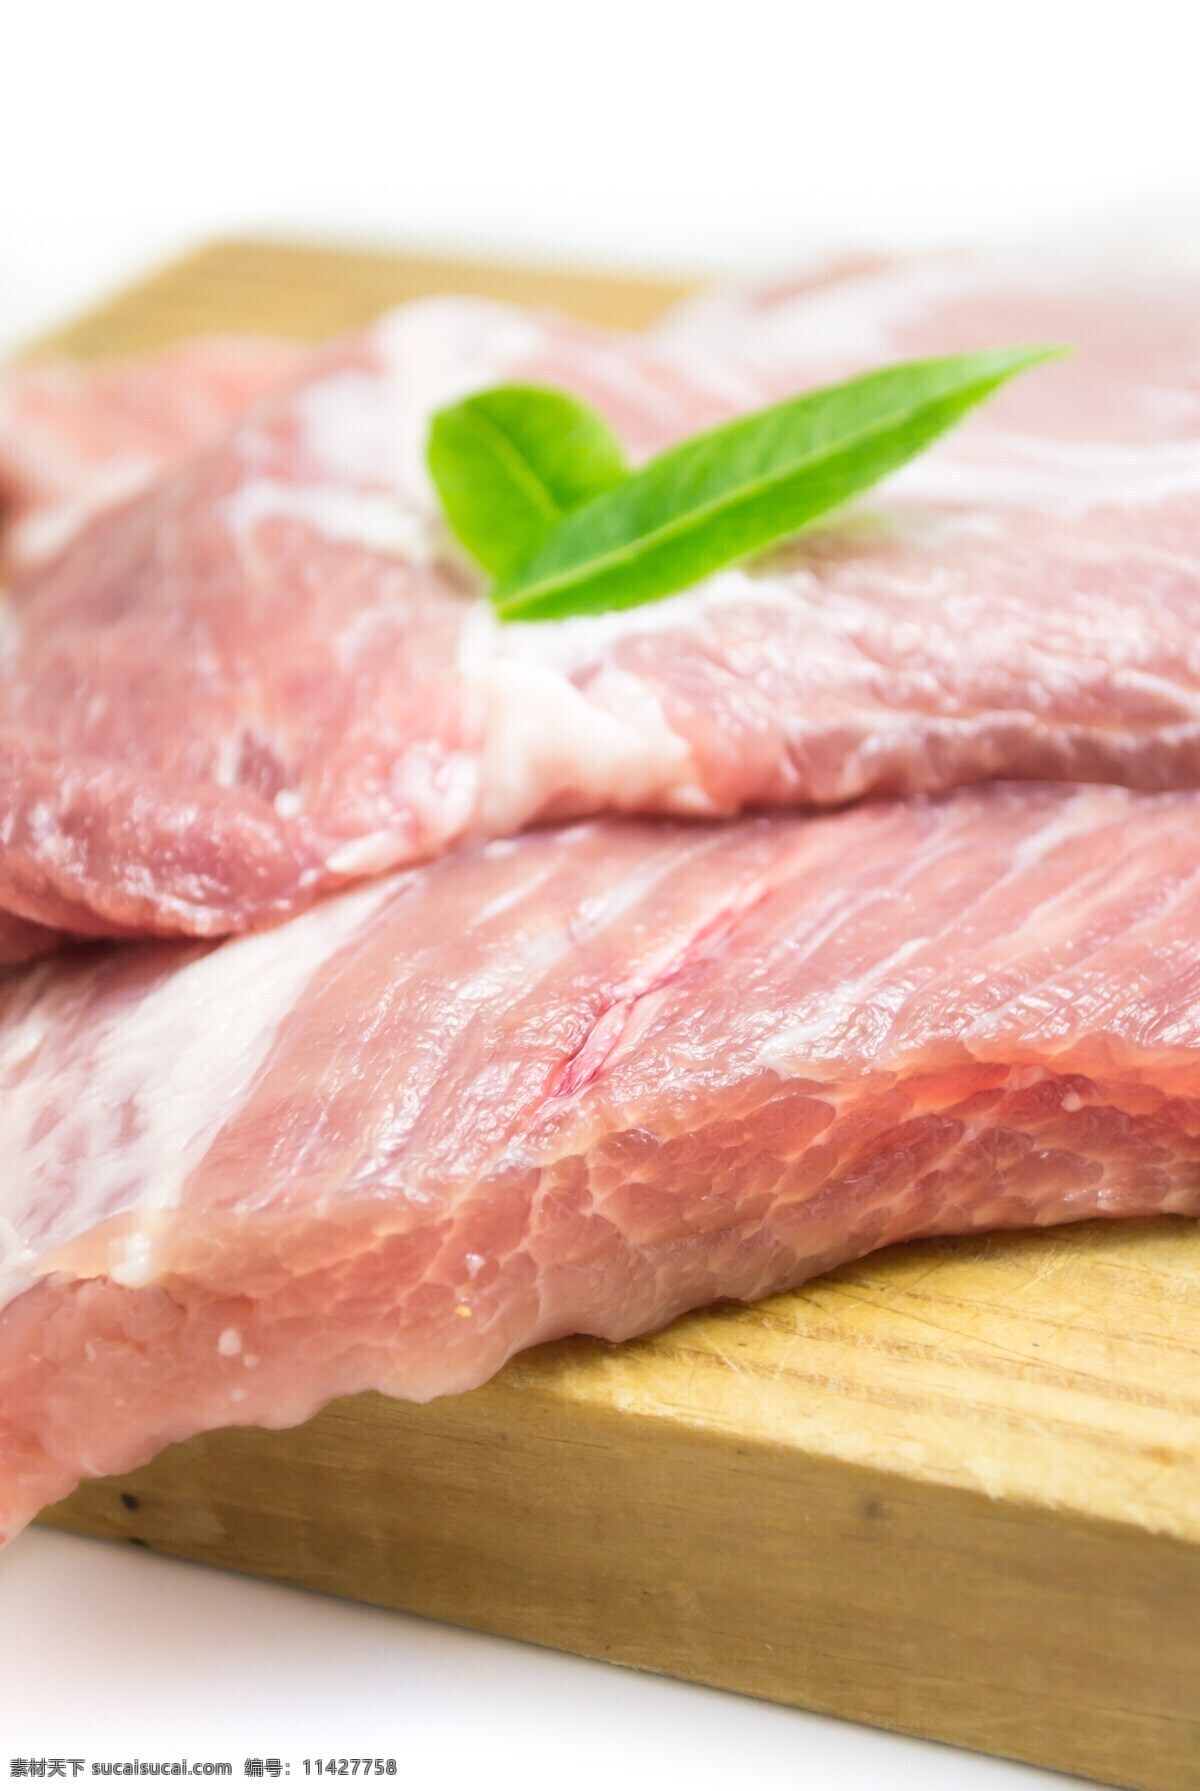 肉类 猪肉 瘦肉 肥肉 肥猪肉 猪排 牛排 牛肉 吃肉 生肉 肉类食物 白肉 红肉 畜肉 禽肉 肉类加工 肉制品 肉类产品 餐饮美食 食物原料